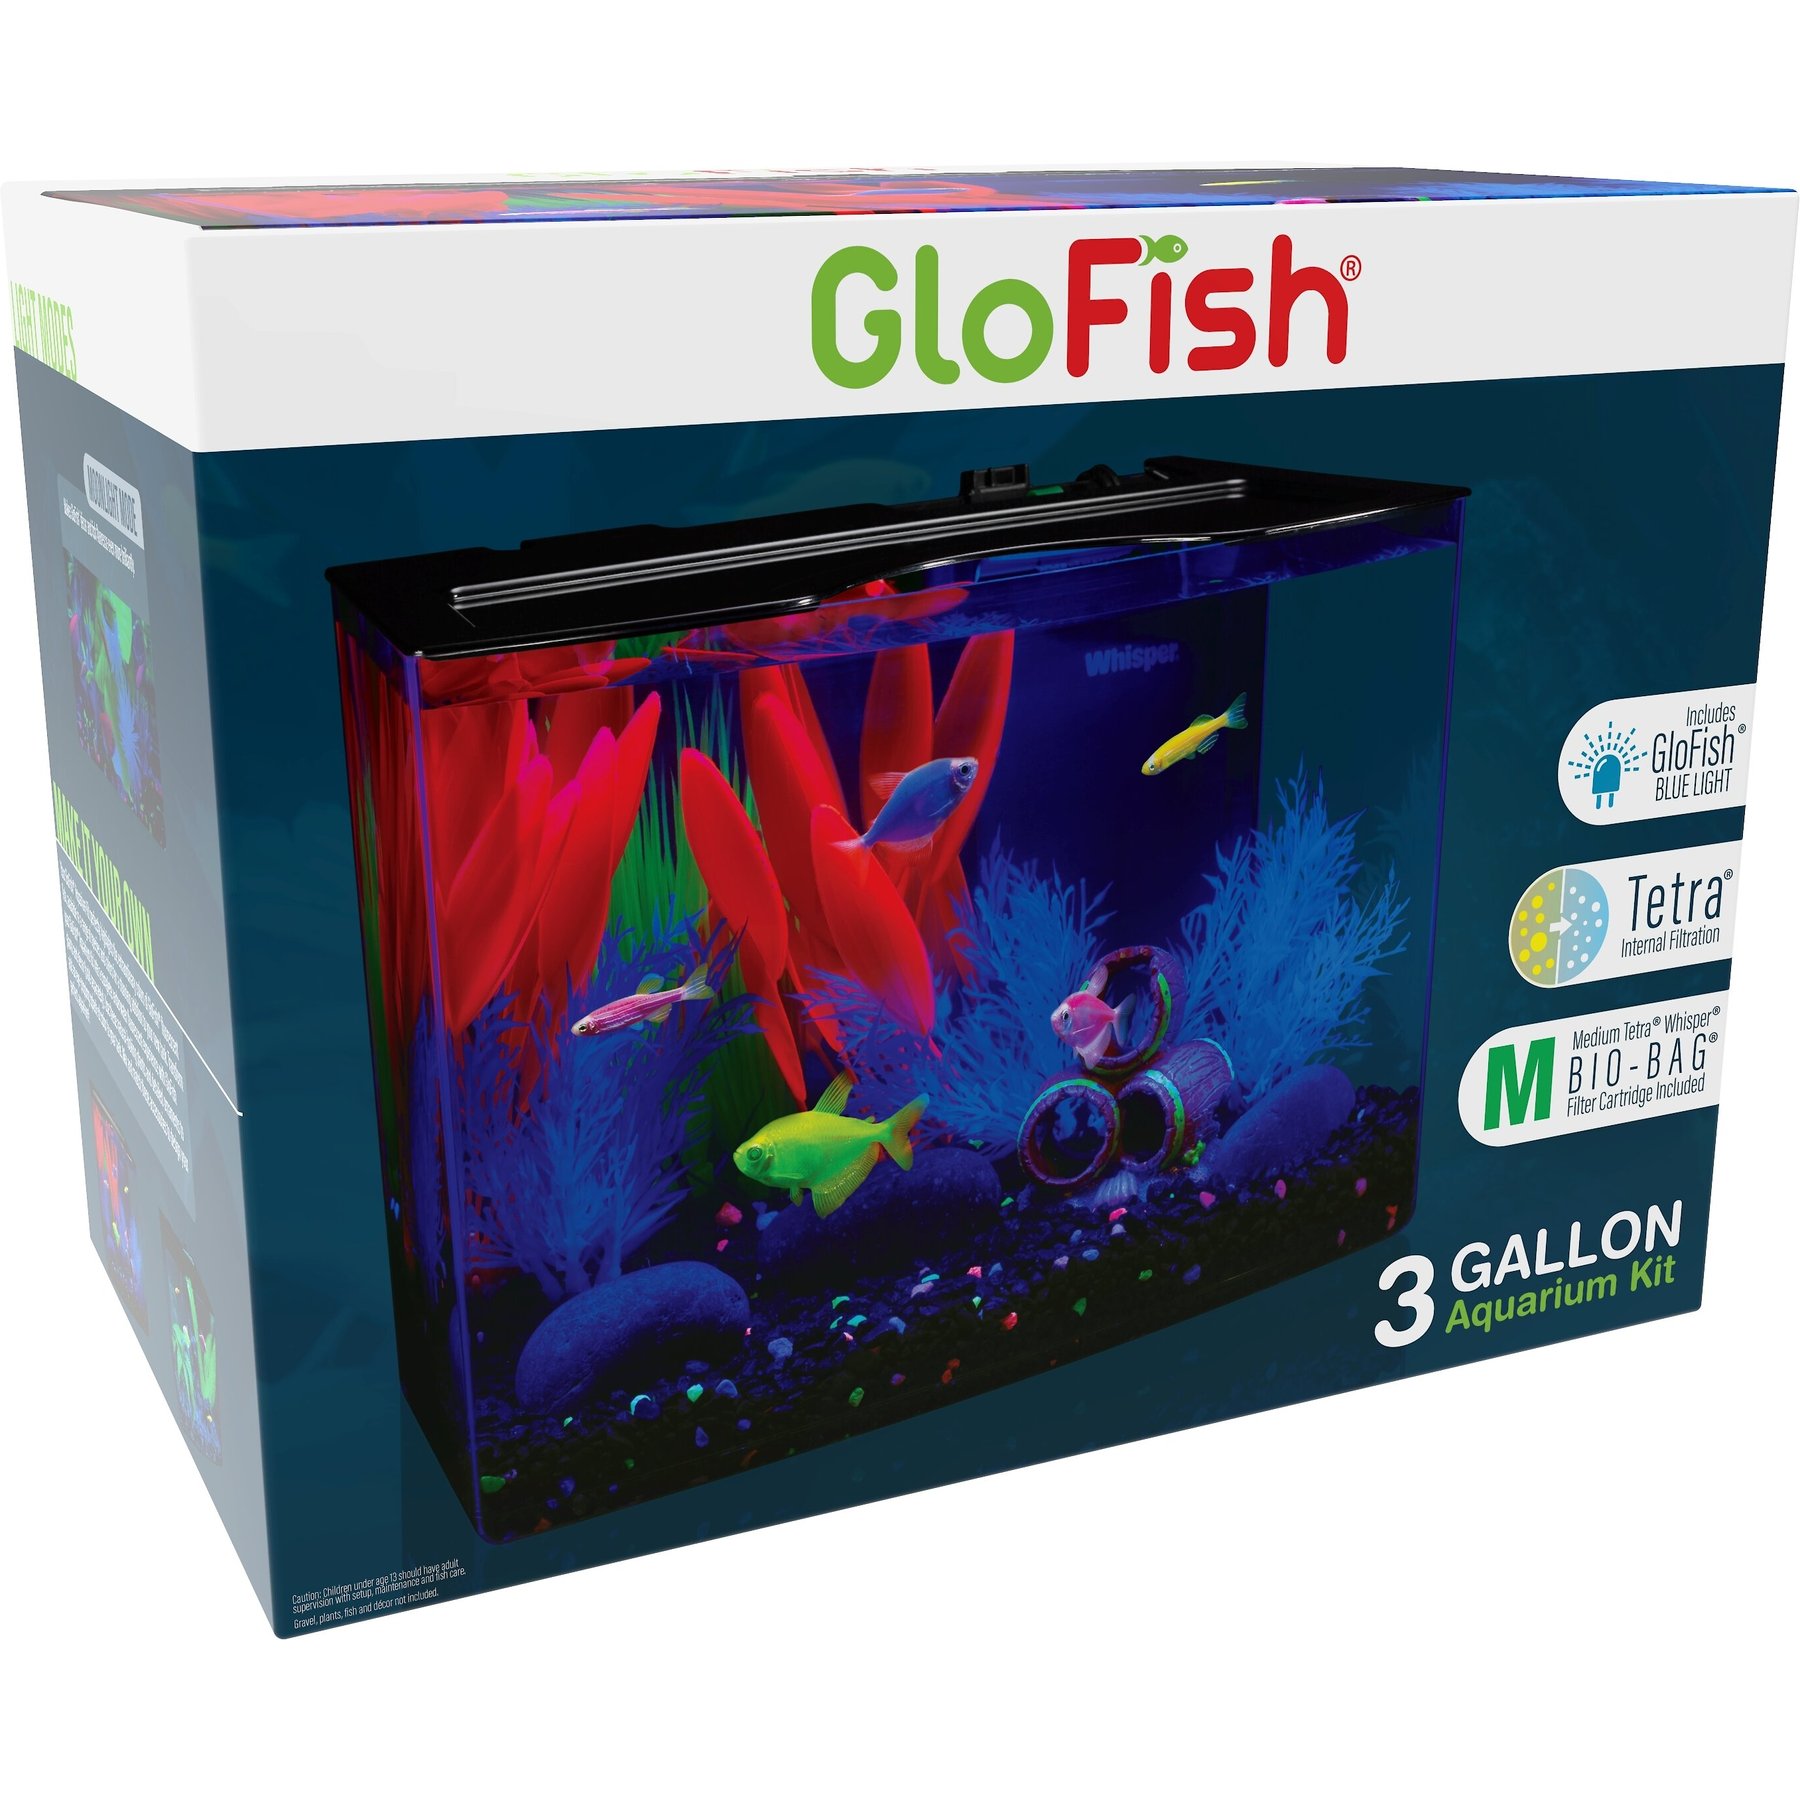 GloFish Multi-Color Fluorescent Aquarium Gravel, 5 lbs.